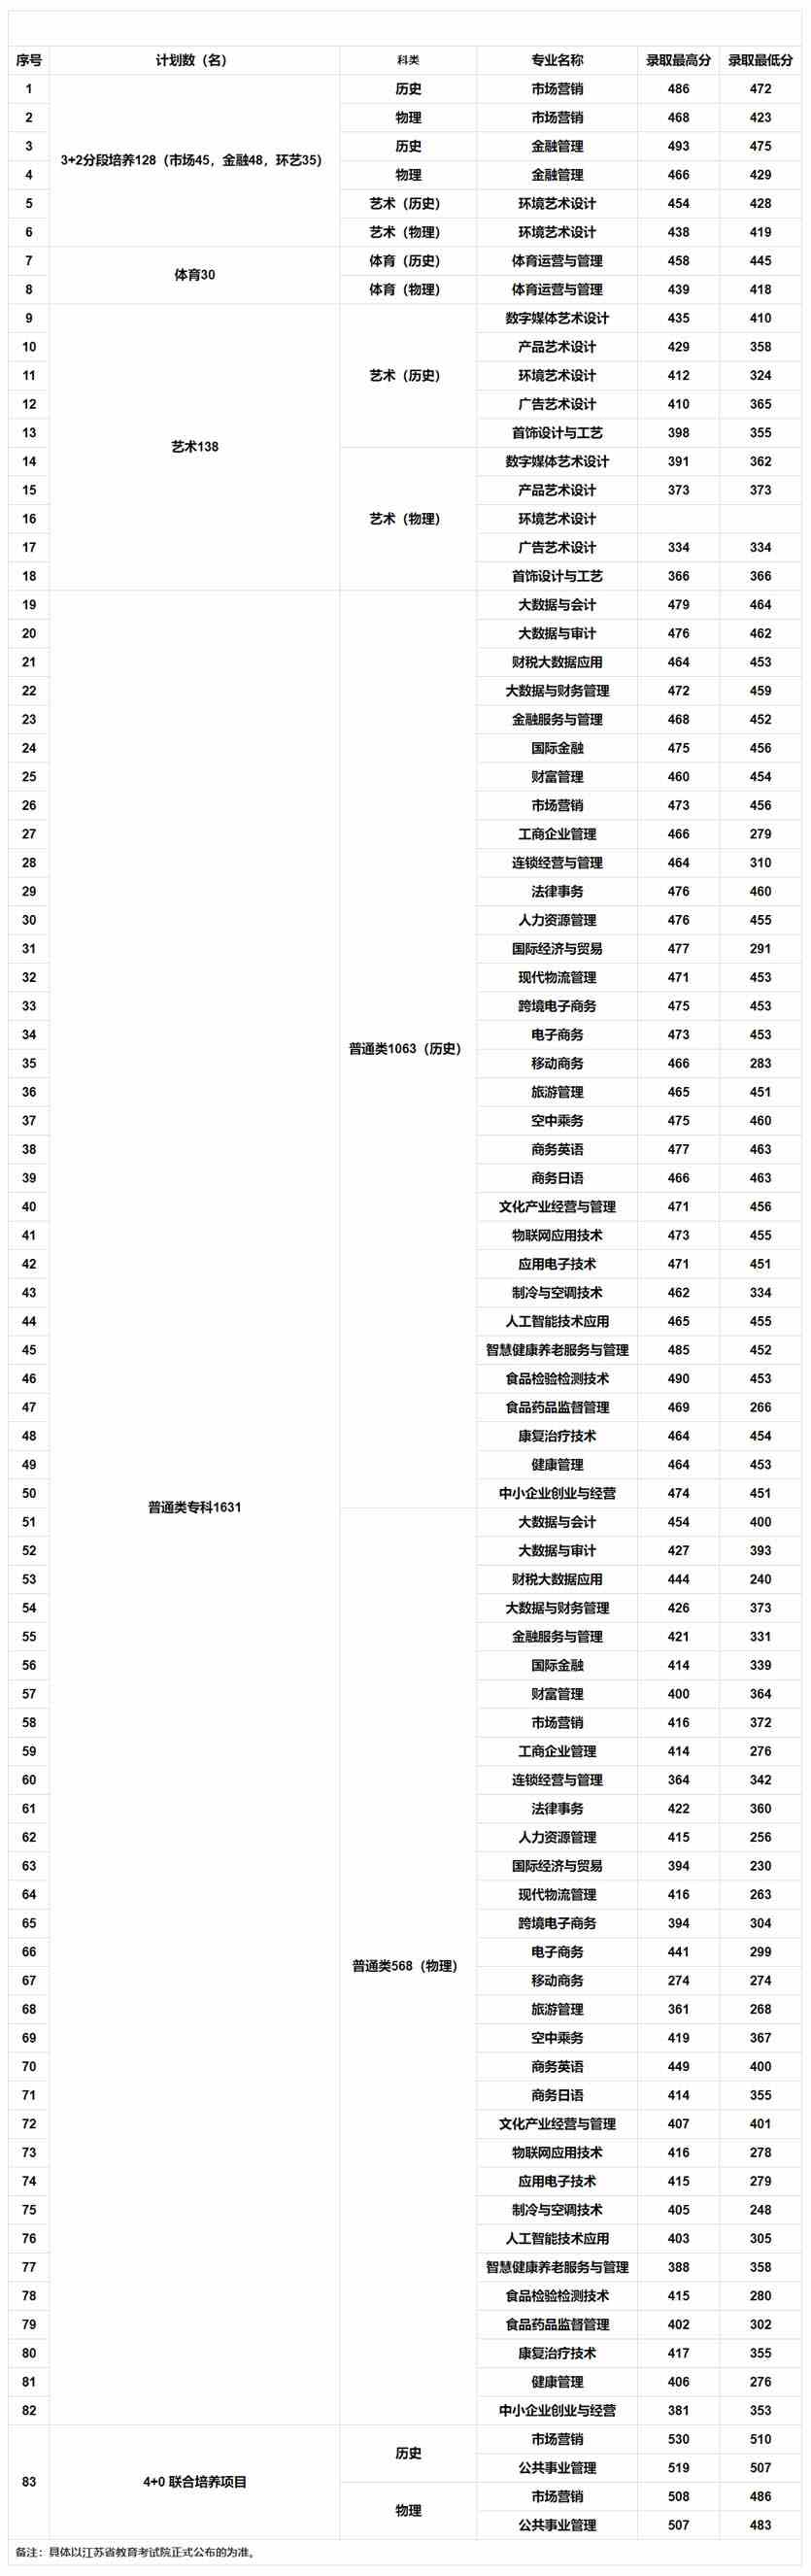 江苏经贸学院2021年录取情况统计表.jpg